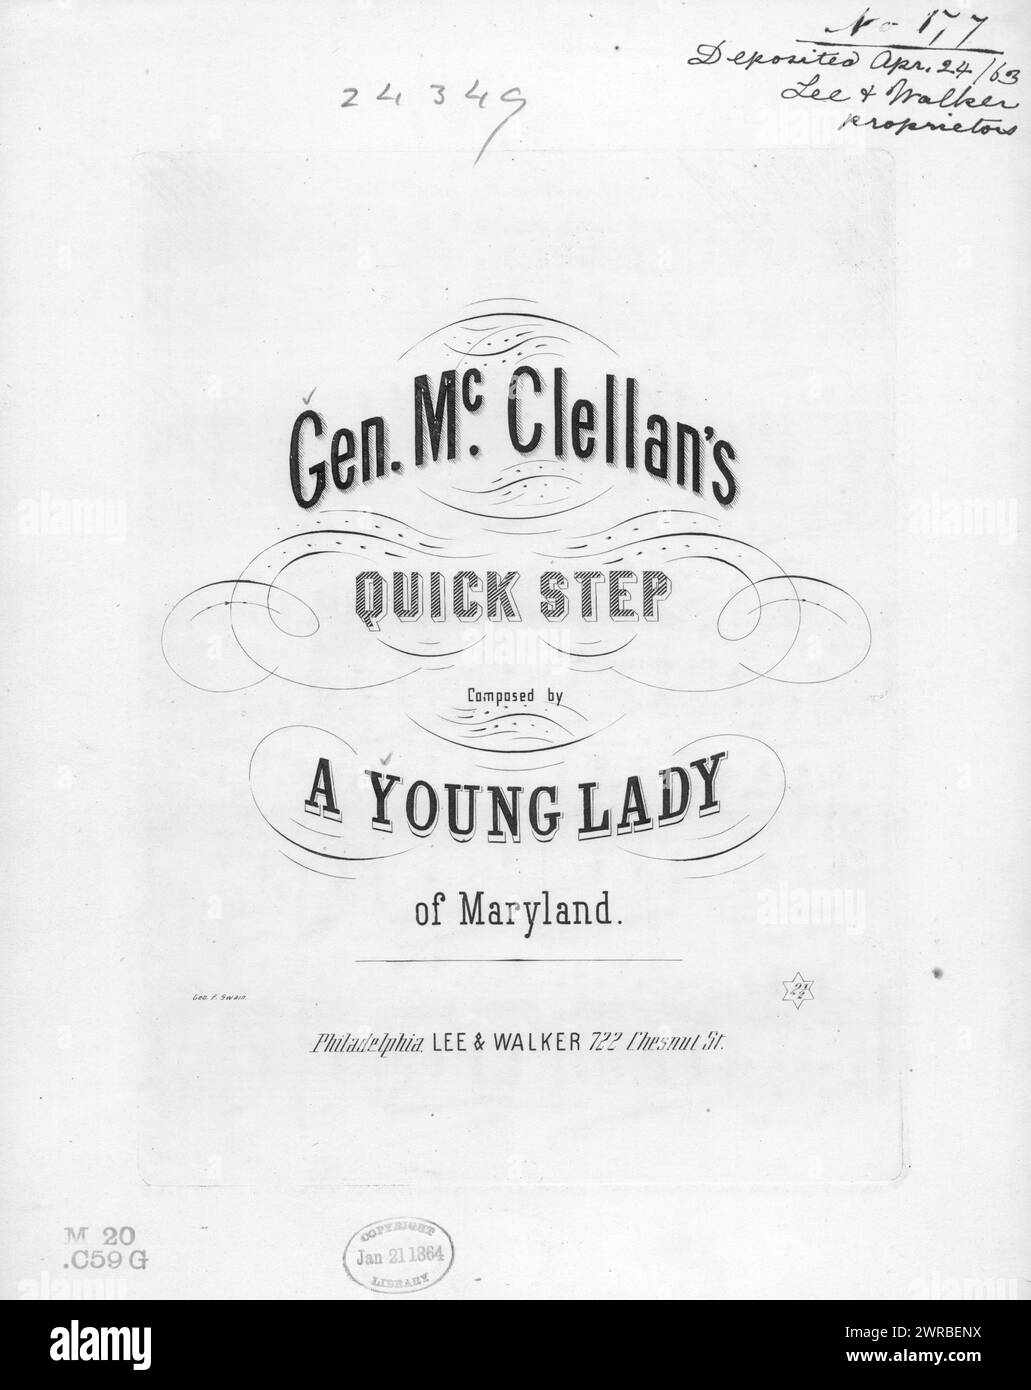 General McClellan's quickstep, A Young lady of Maryland (compositor), Lee & Walker, Filadelfia, 1863., Estados Unidos, historia, Guerra Civil, 1861-1865, Canciones y música Foto de stock